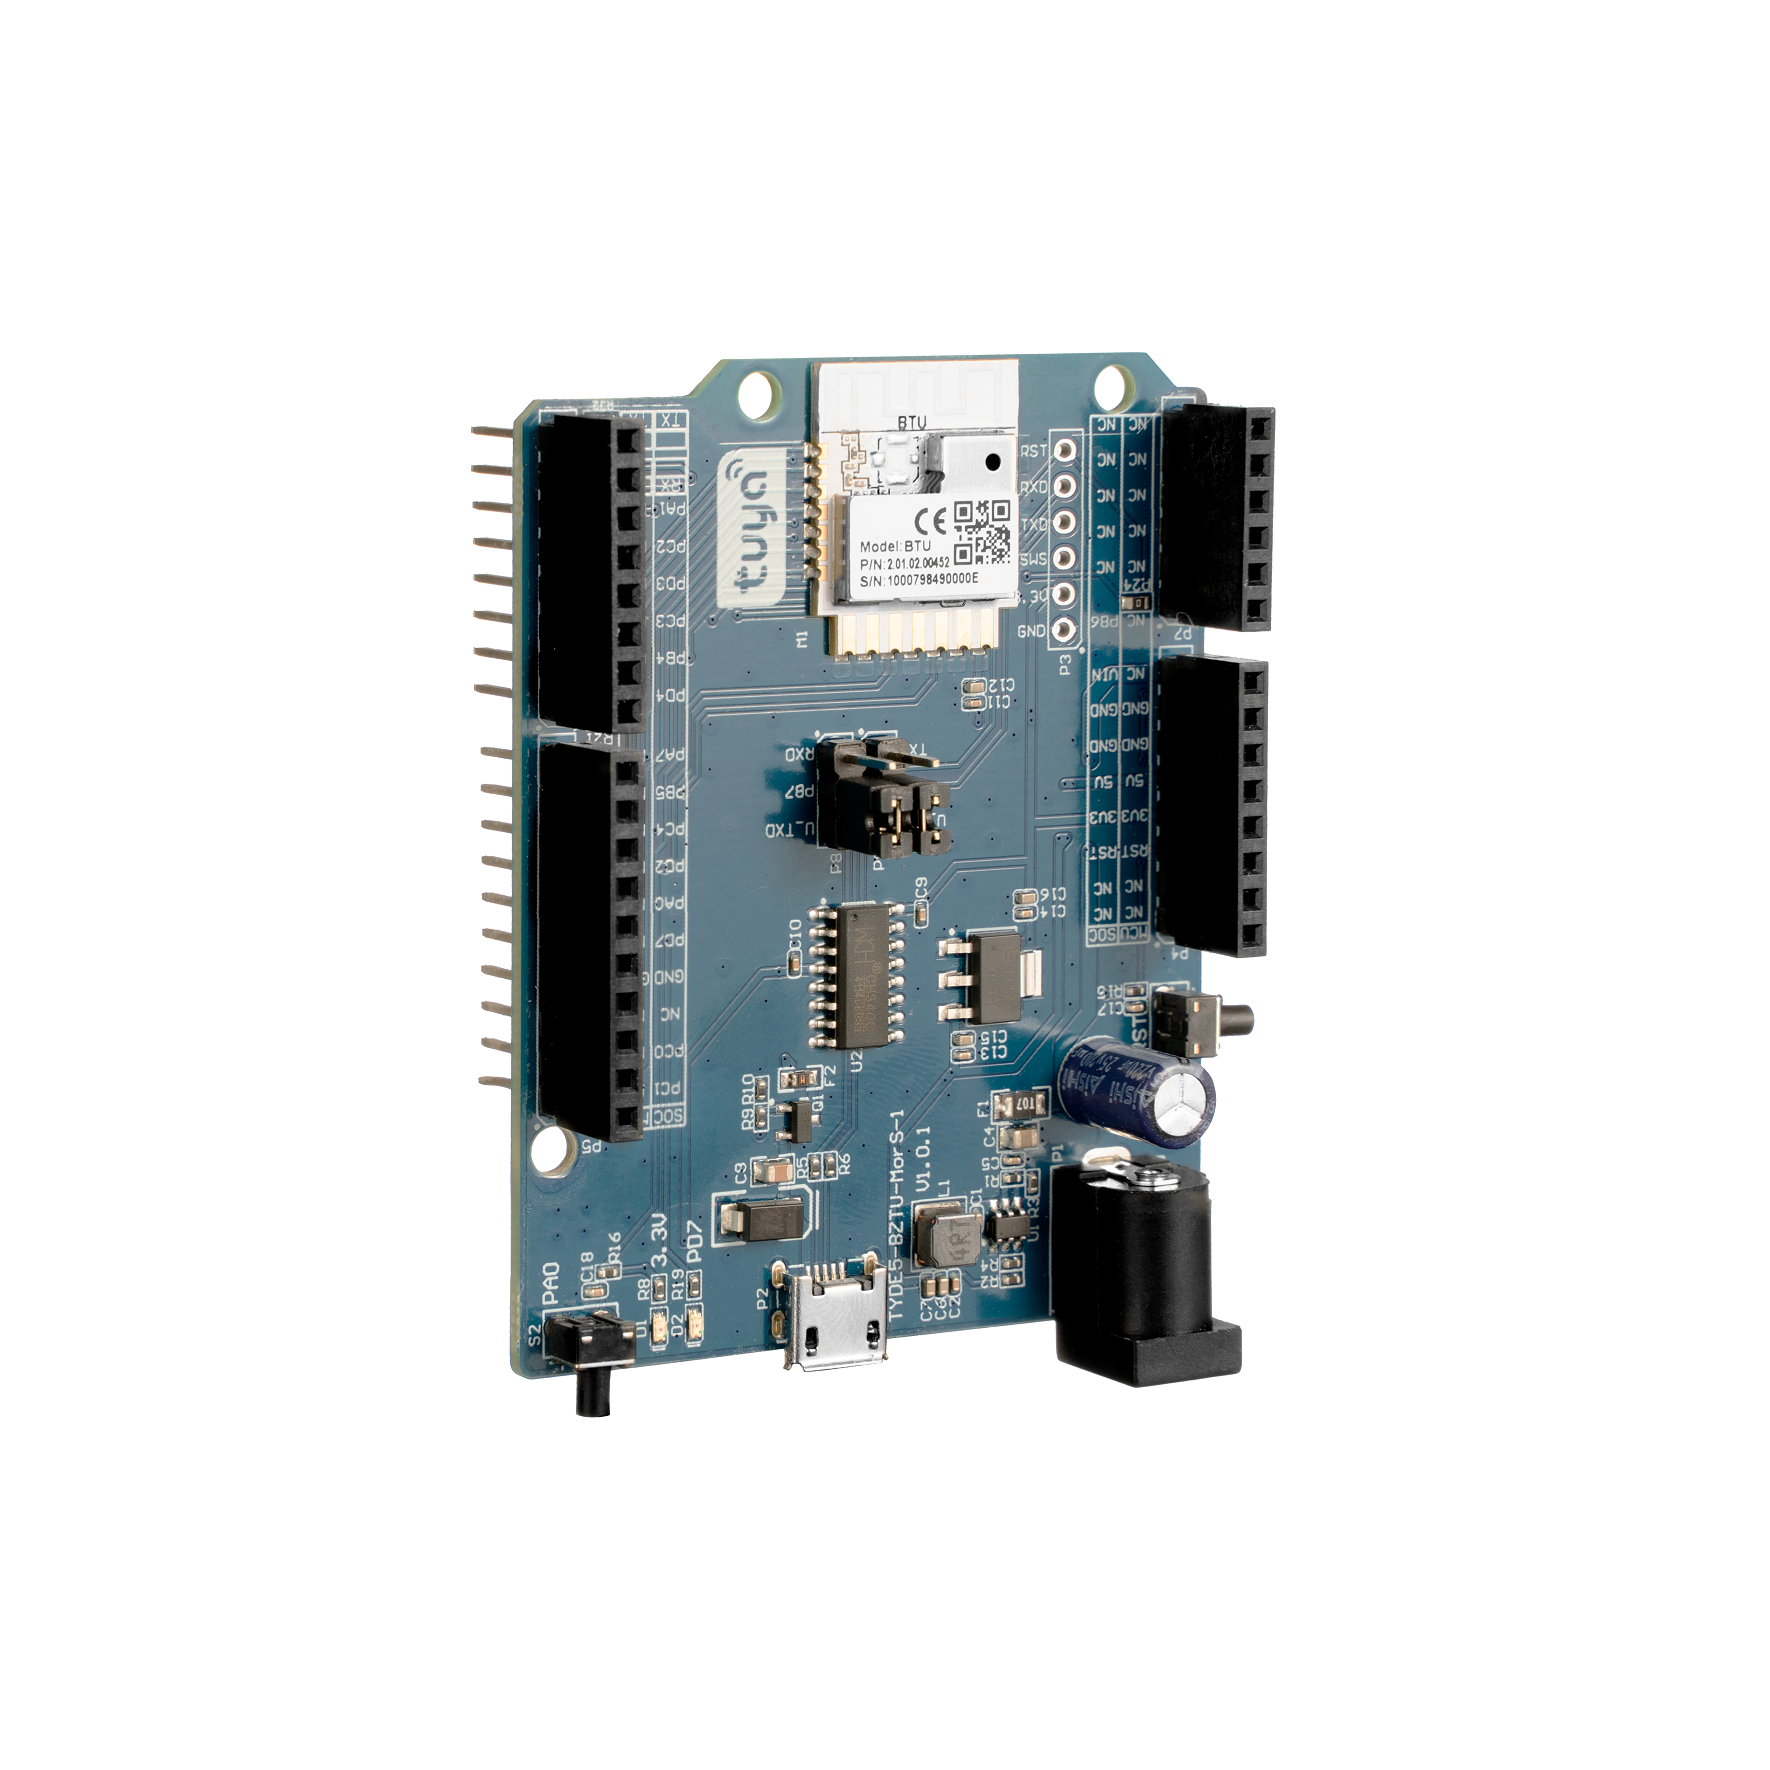 Bluetooth SoC Board V2 (BTU)